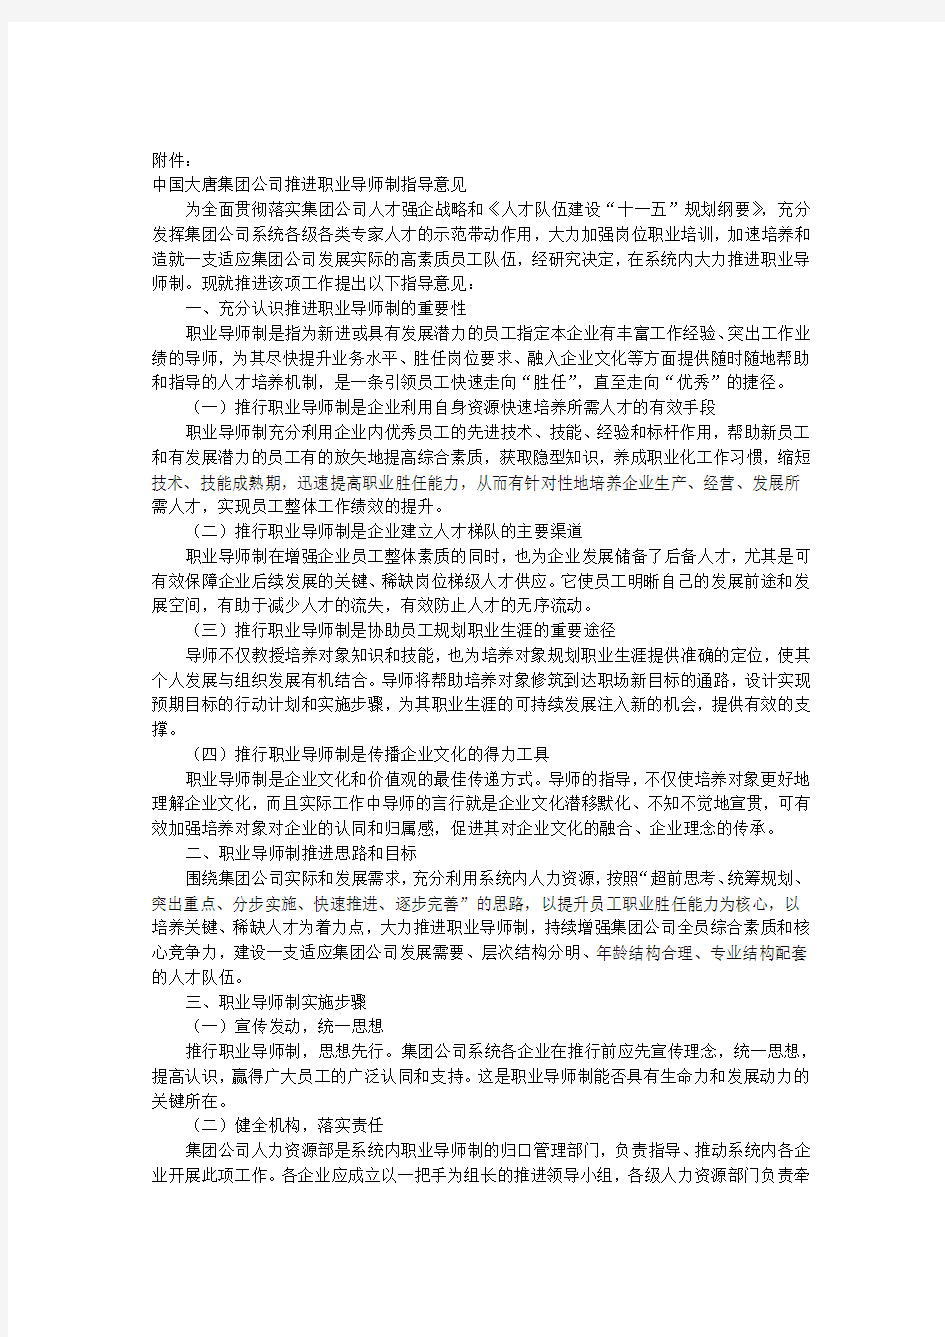 02中国大唐集团公司推进职业导师制指导意见